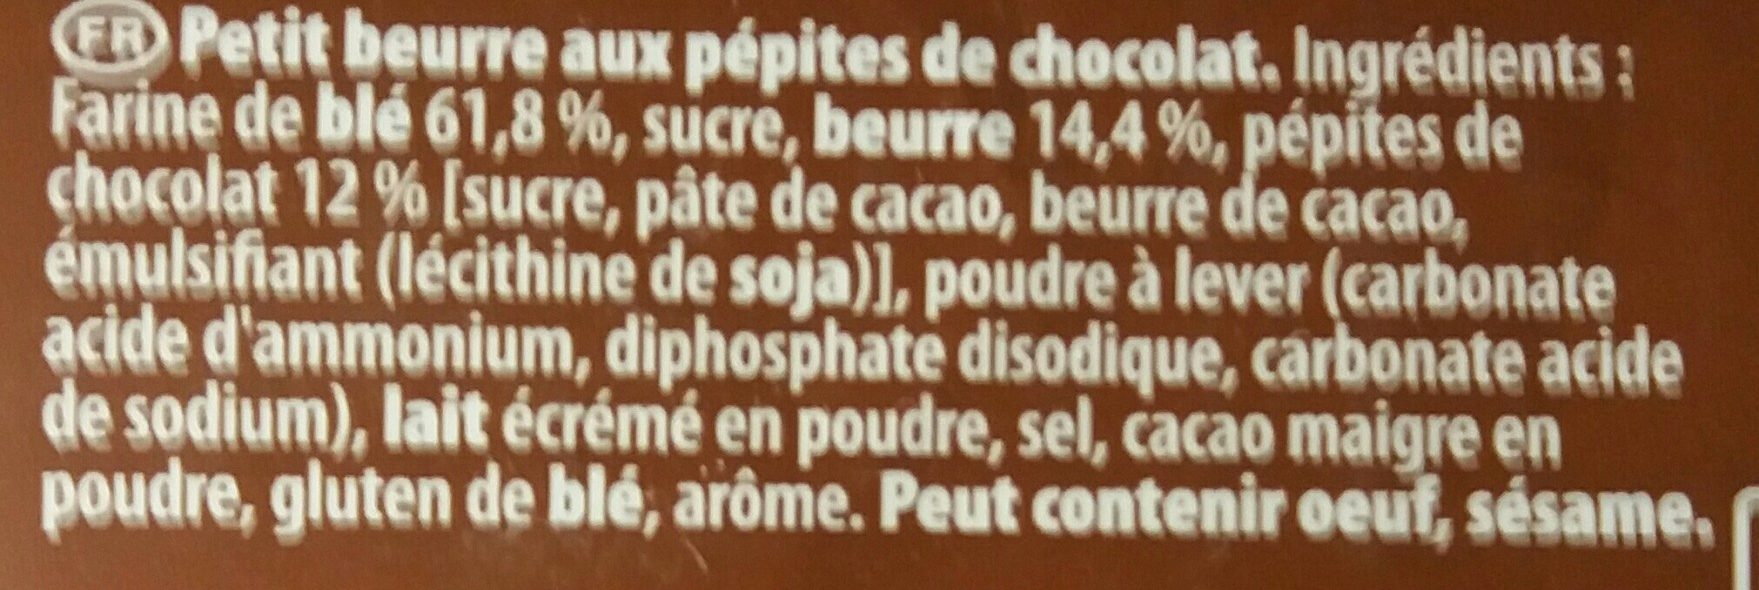 Petit LU pépites de chocolat - Ingrédients